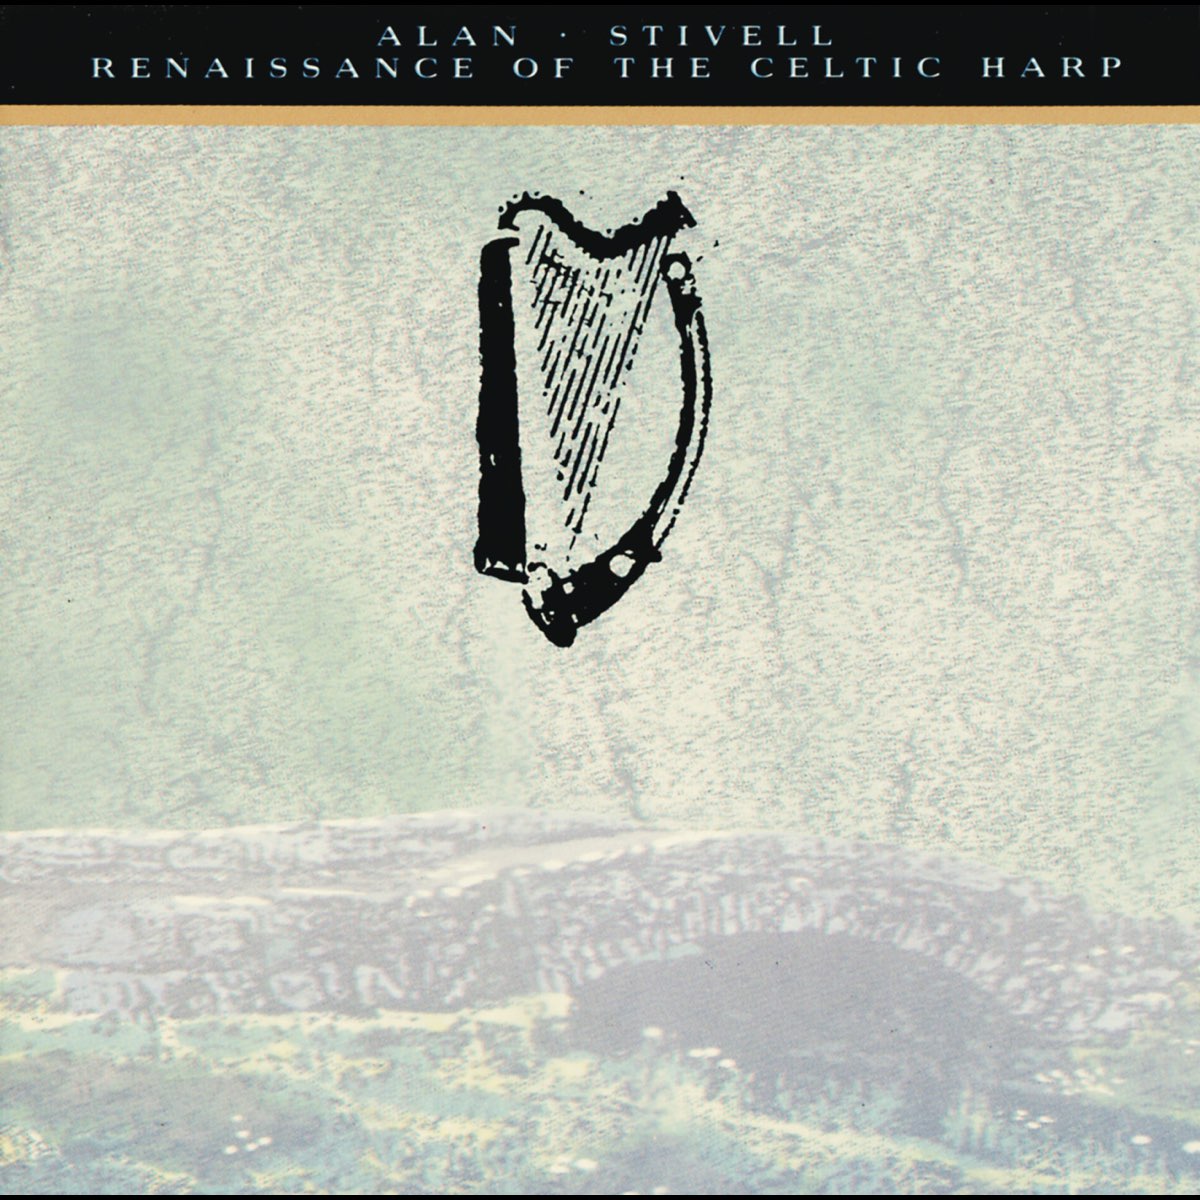 Renaissance of the Celtic Harp par Alan Stivell sur Apple Music